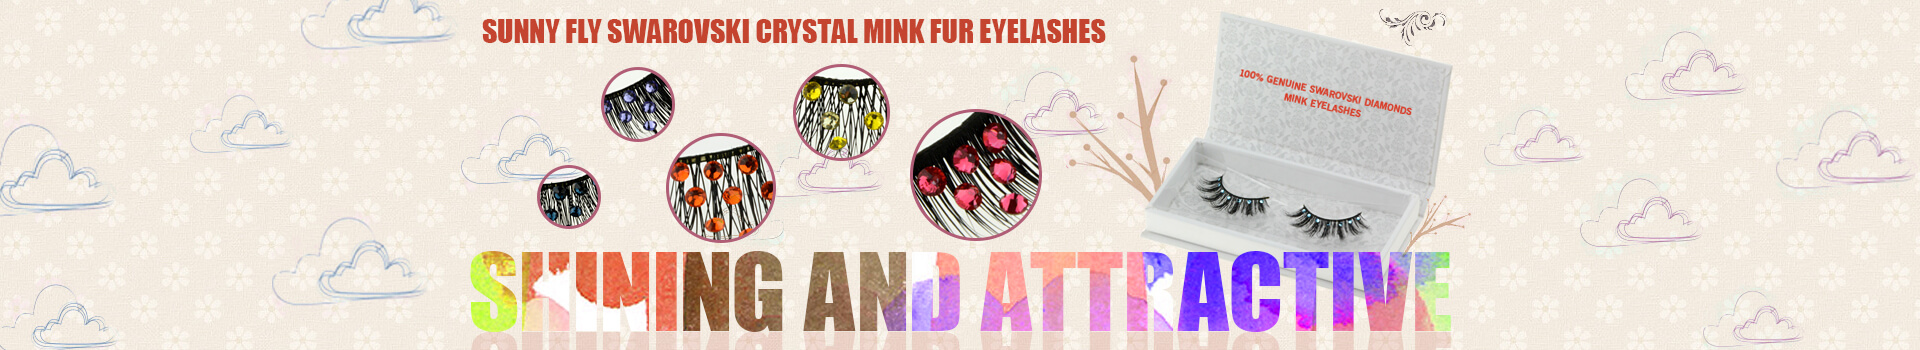 Swarovski Crystal Mink Fur Eyelashes MS39